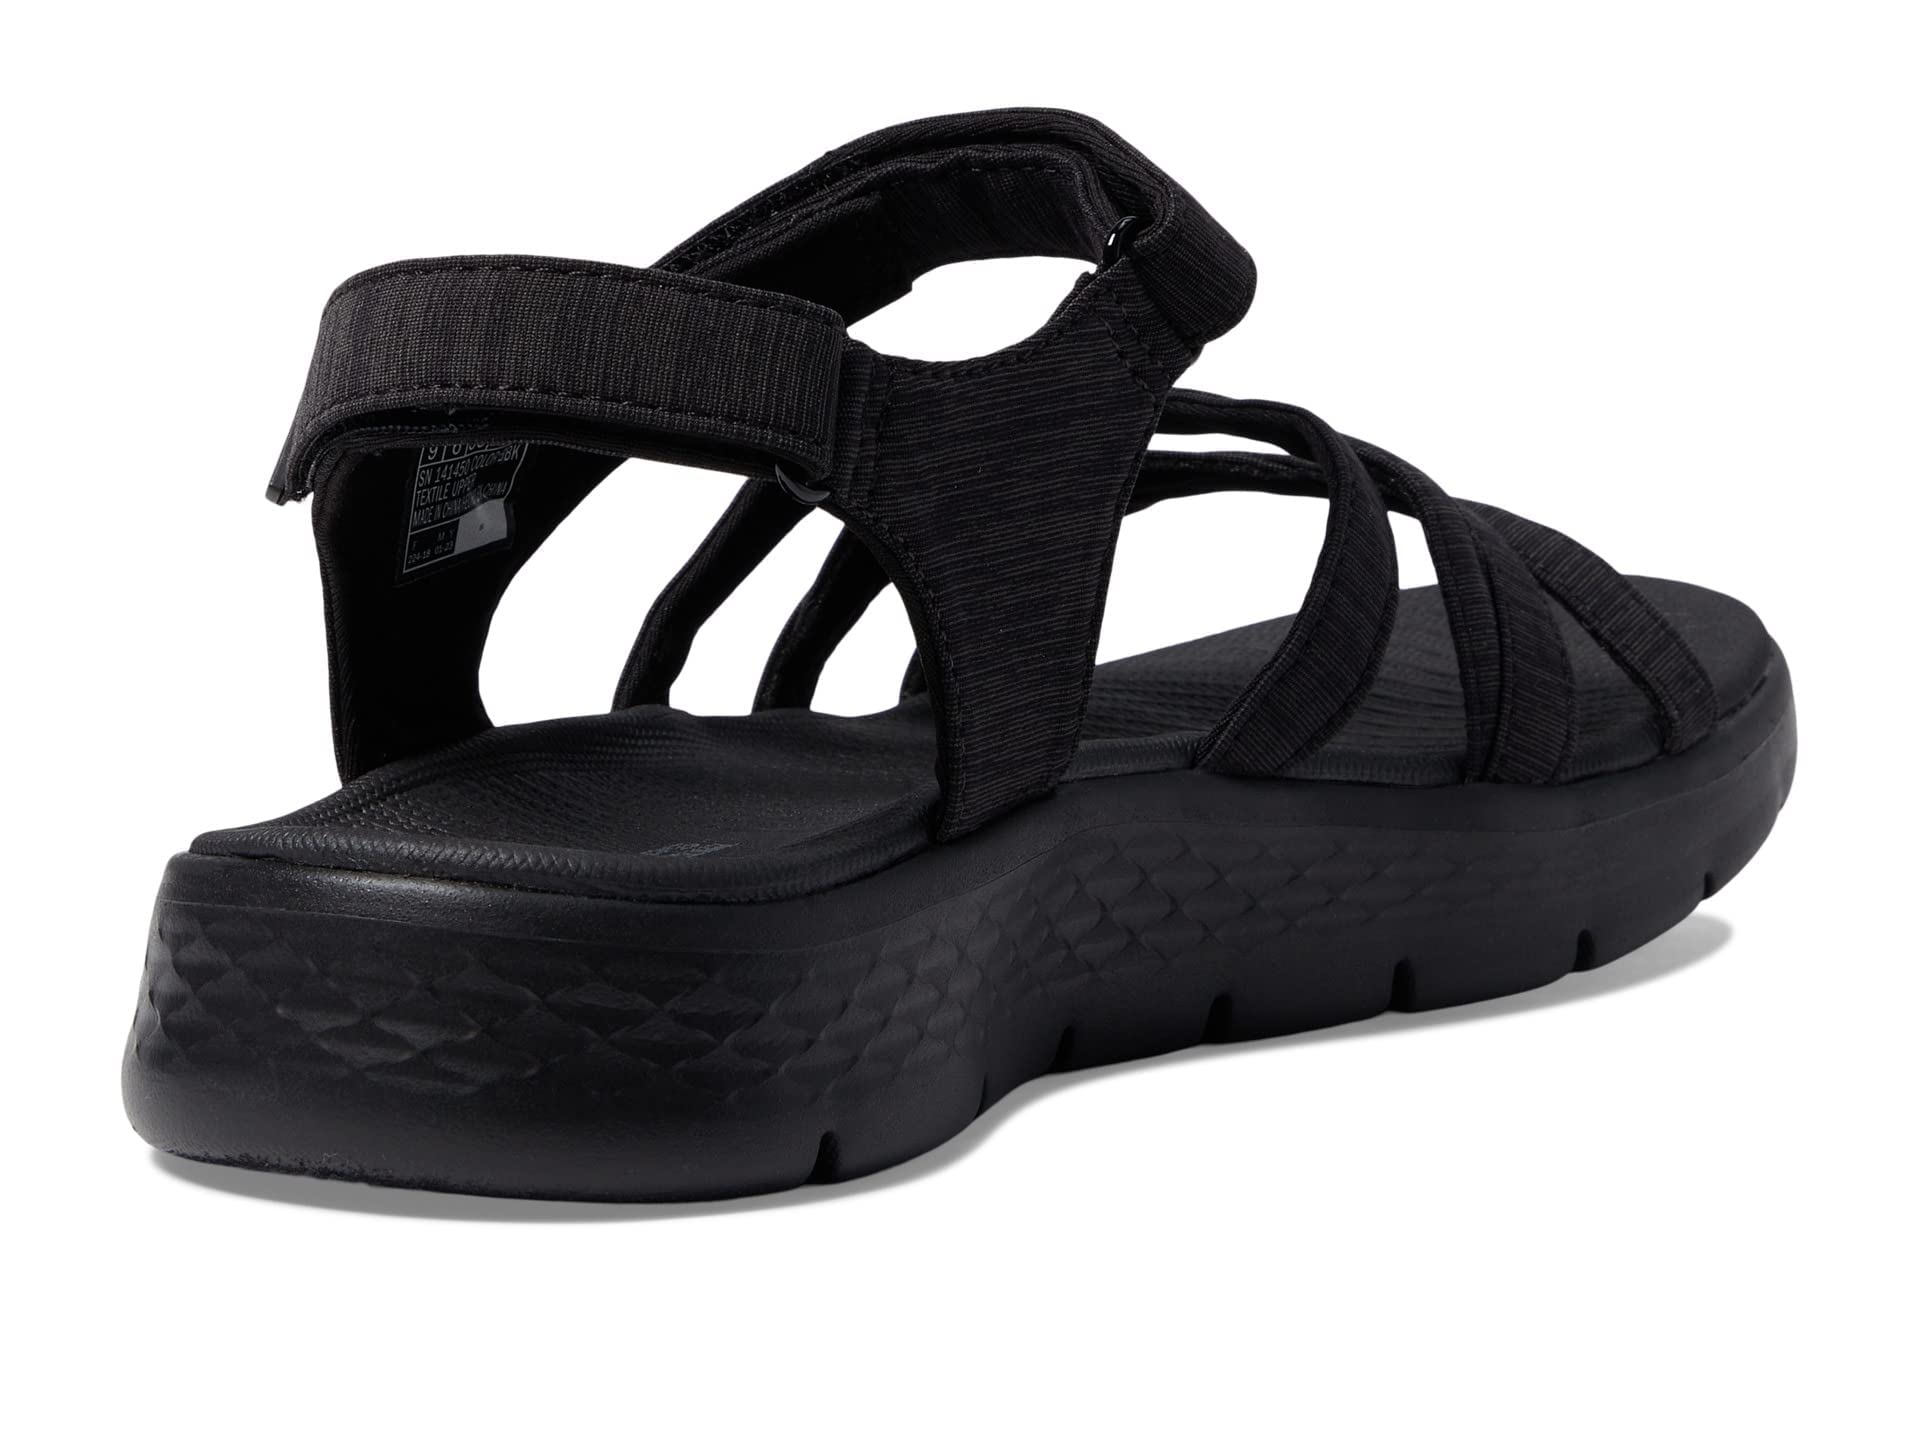 Skechers womens Go Walk Flex - Sunshine Sandal, Black, 9 US